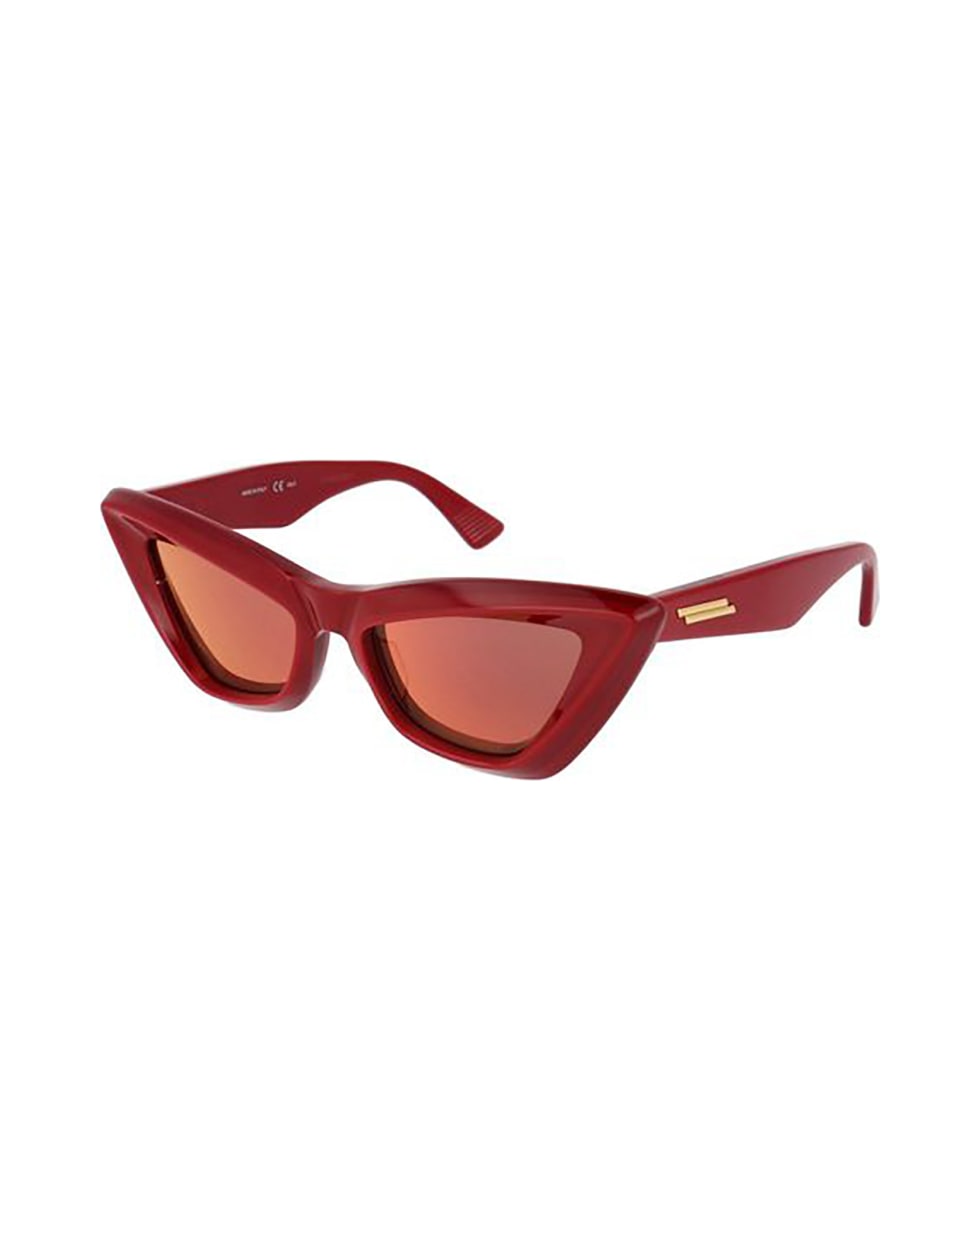 Bottega Veneta Eyewear 17ep40r0a - Red Red Red